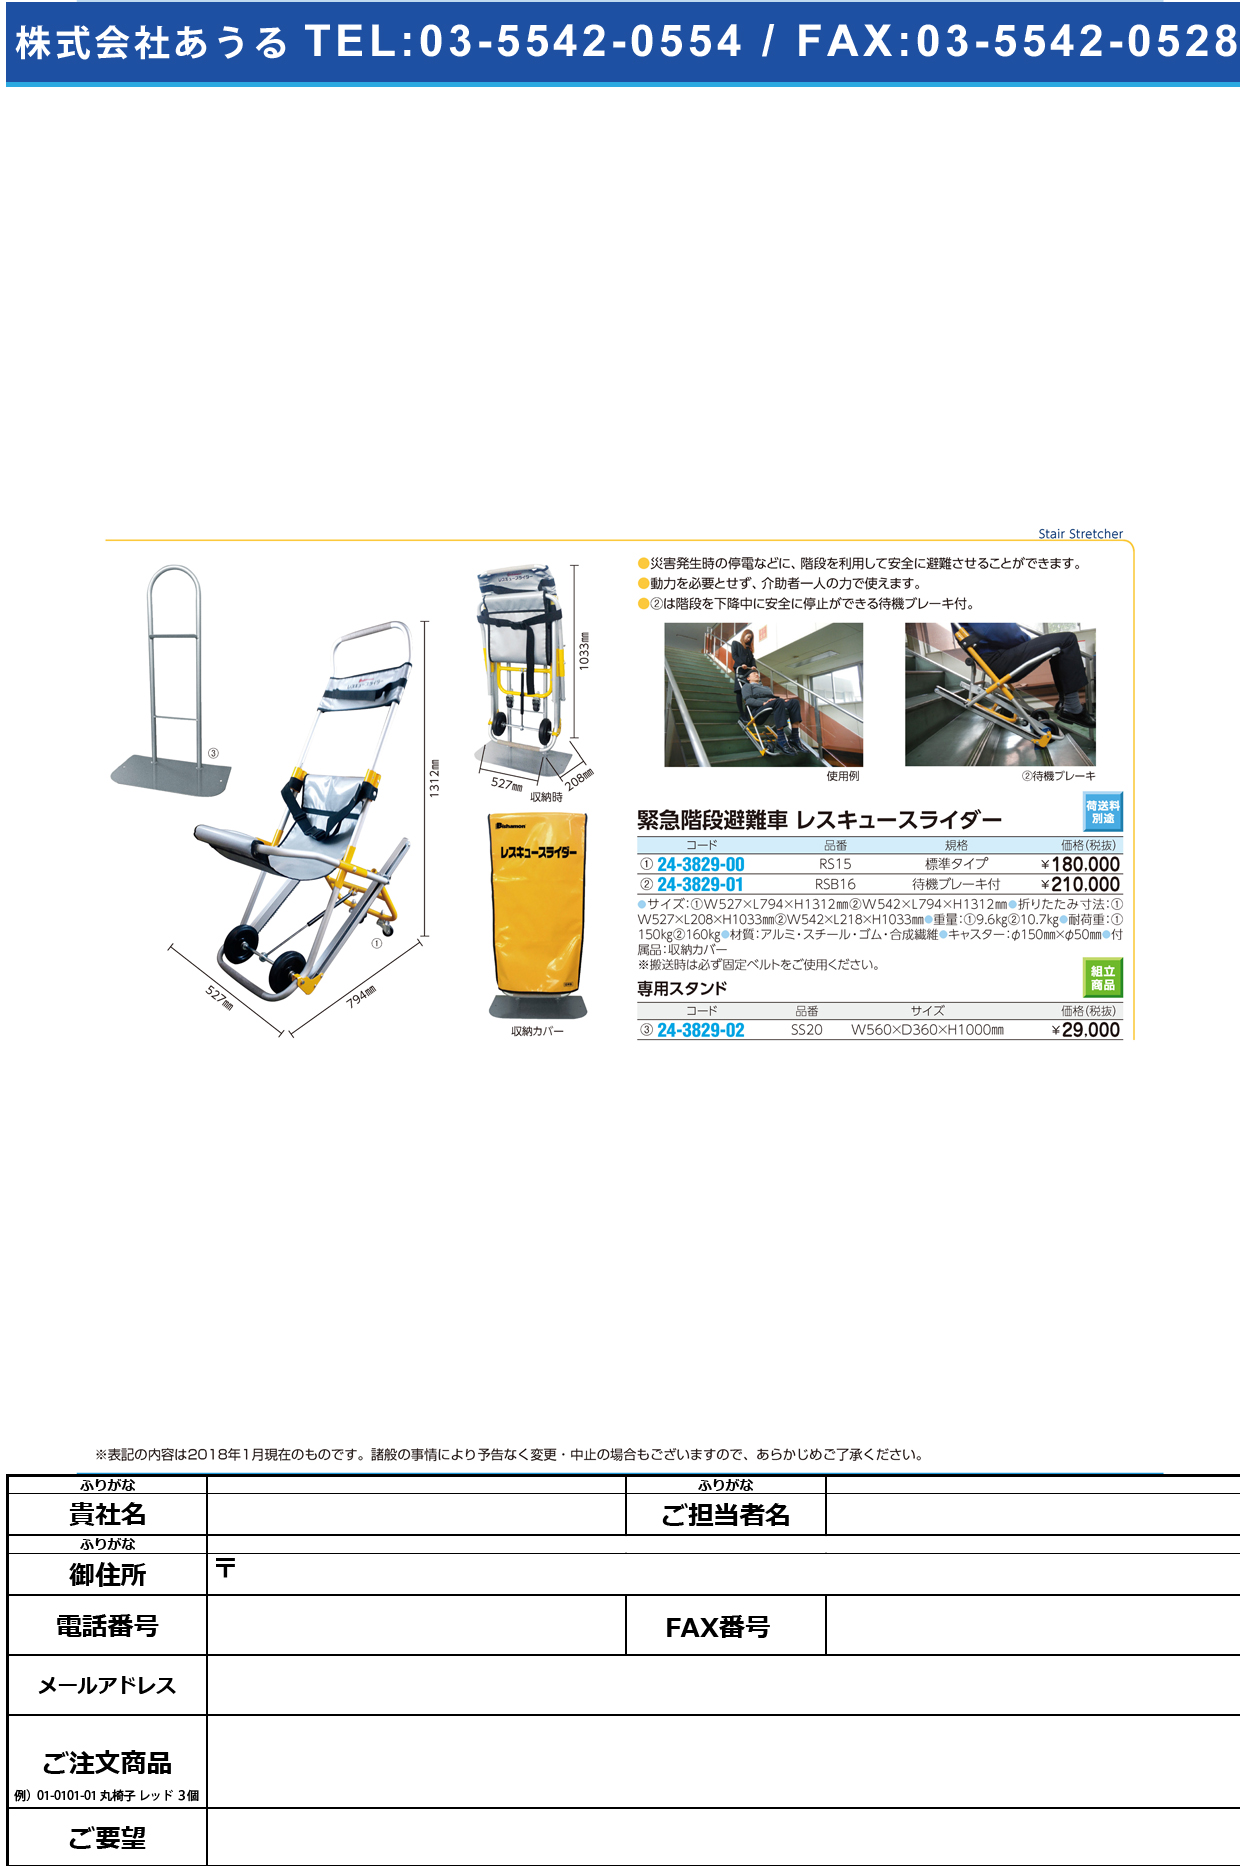 (24-3829-00)レスキュースライダー（緊急階段避難車 RS15(ﾋｮｳｼﾞｭﾝﾀｲﾌﾟ) ﾚｽｷｭｰｽﾗｲﾀﾞｰ【1台単位】【2018年カタログ商品】